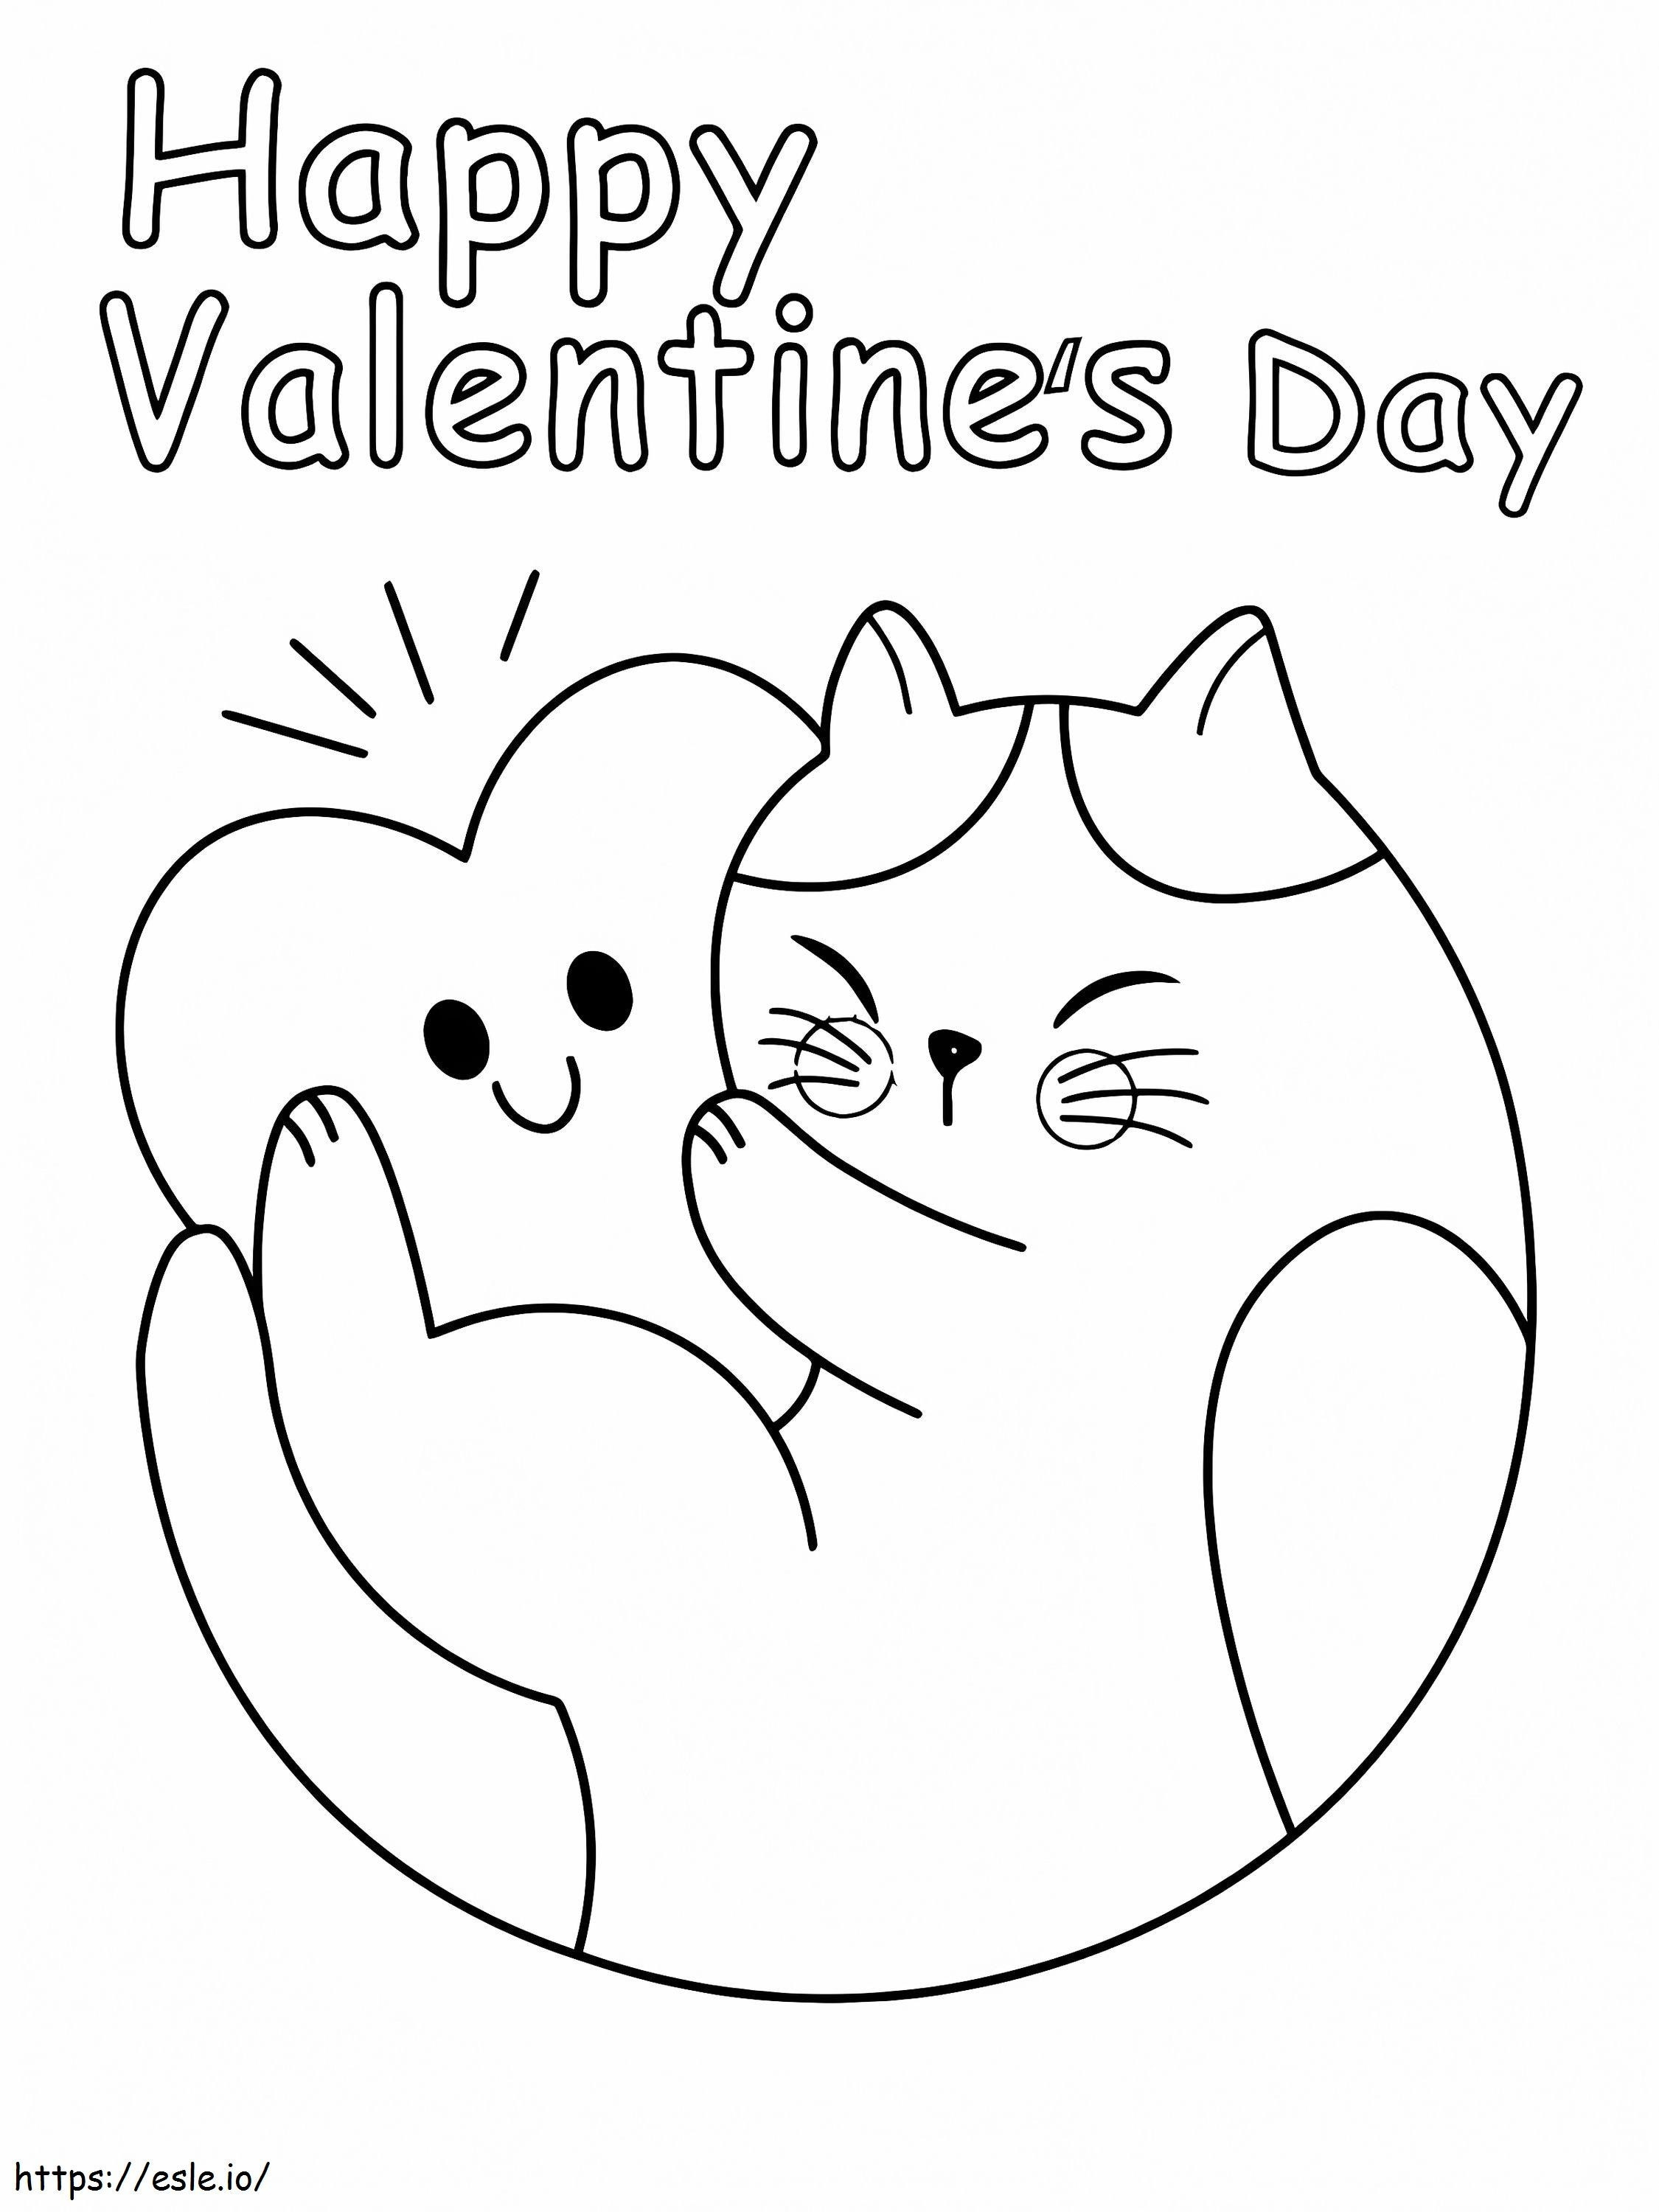 Küçük Kedi ve Kalp Sevgililer Günü boyama